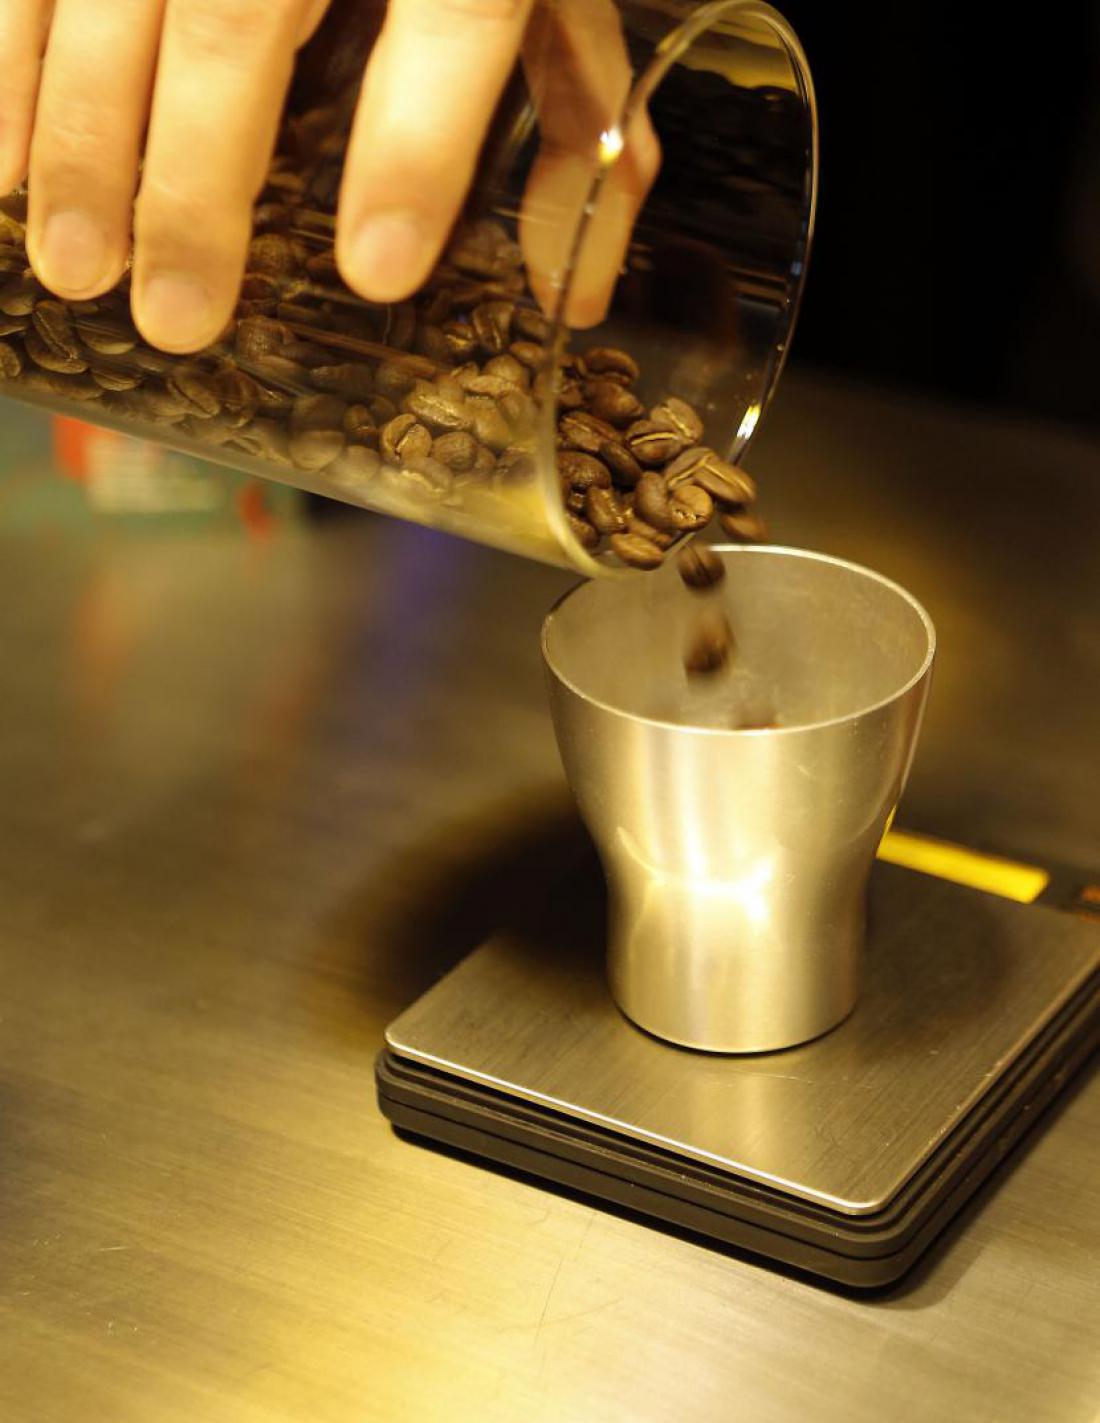 Poleg praženja dobrih surovin in mletja sveže kave je pomembno odmerjanje, priporoča se tehtanje zrn.